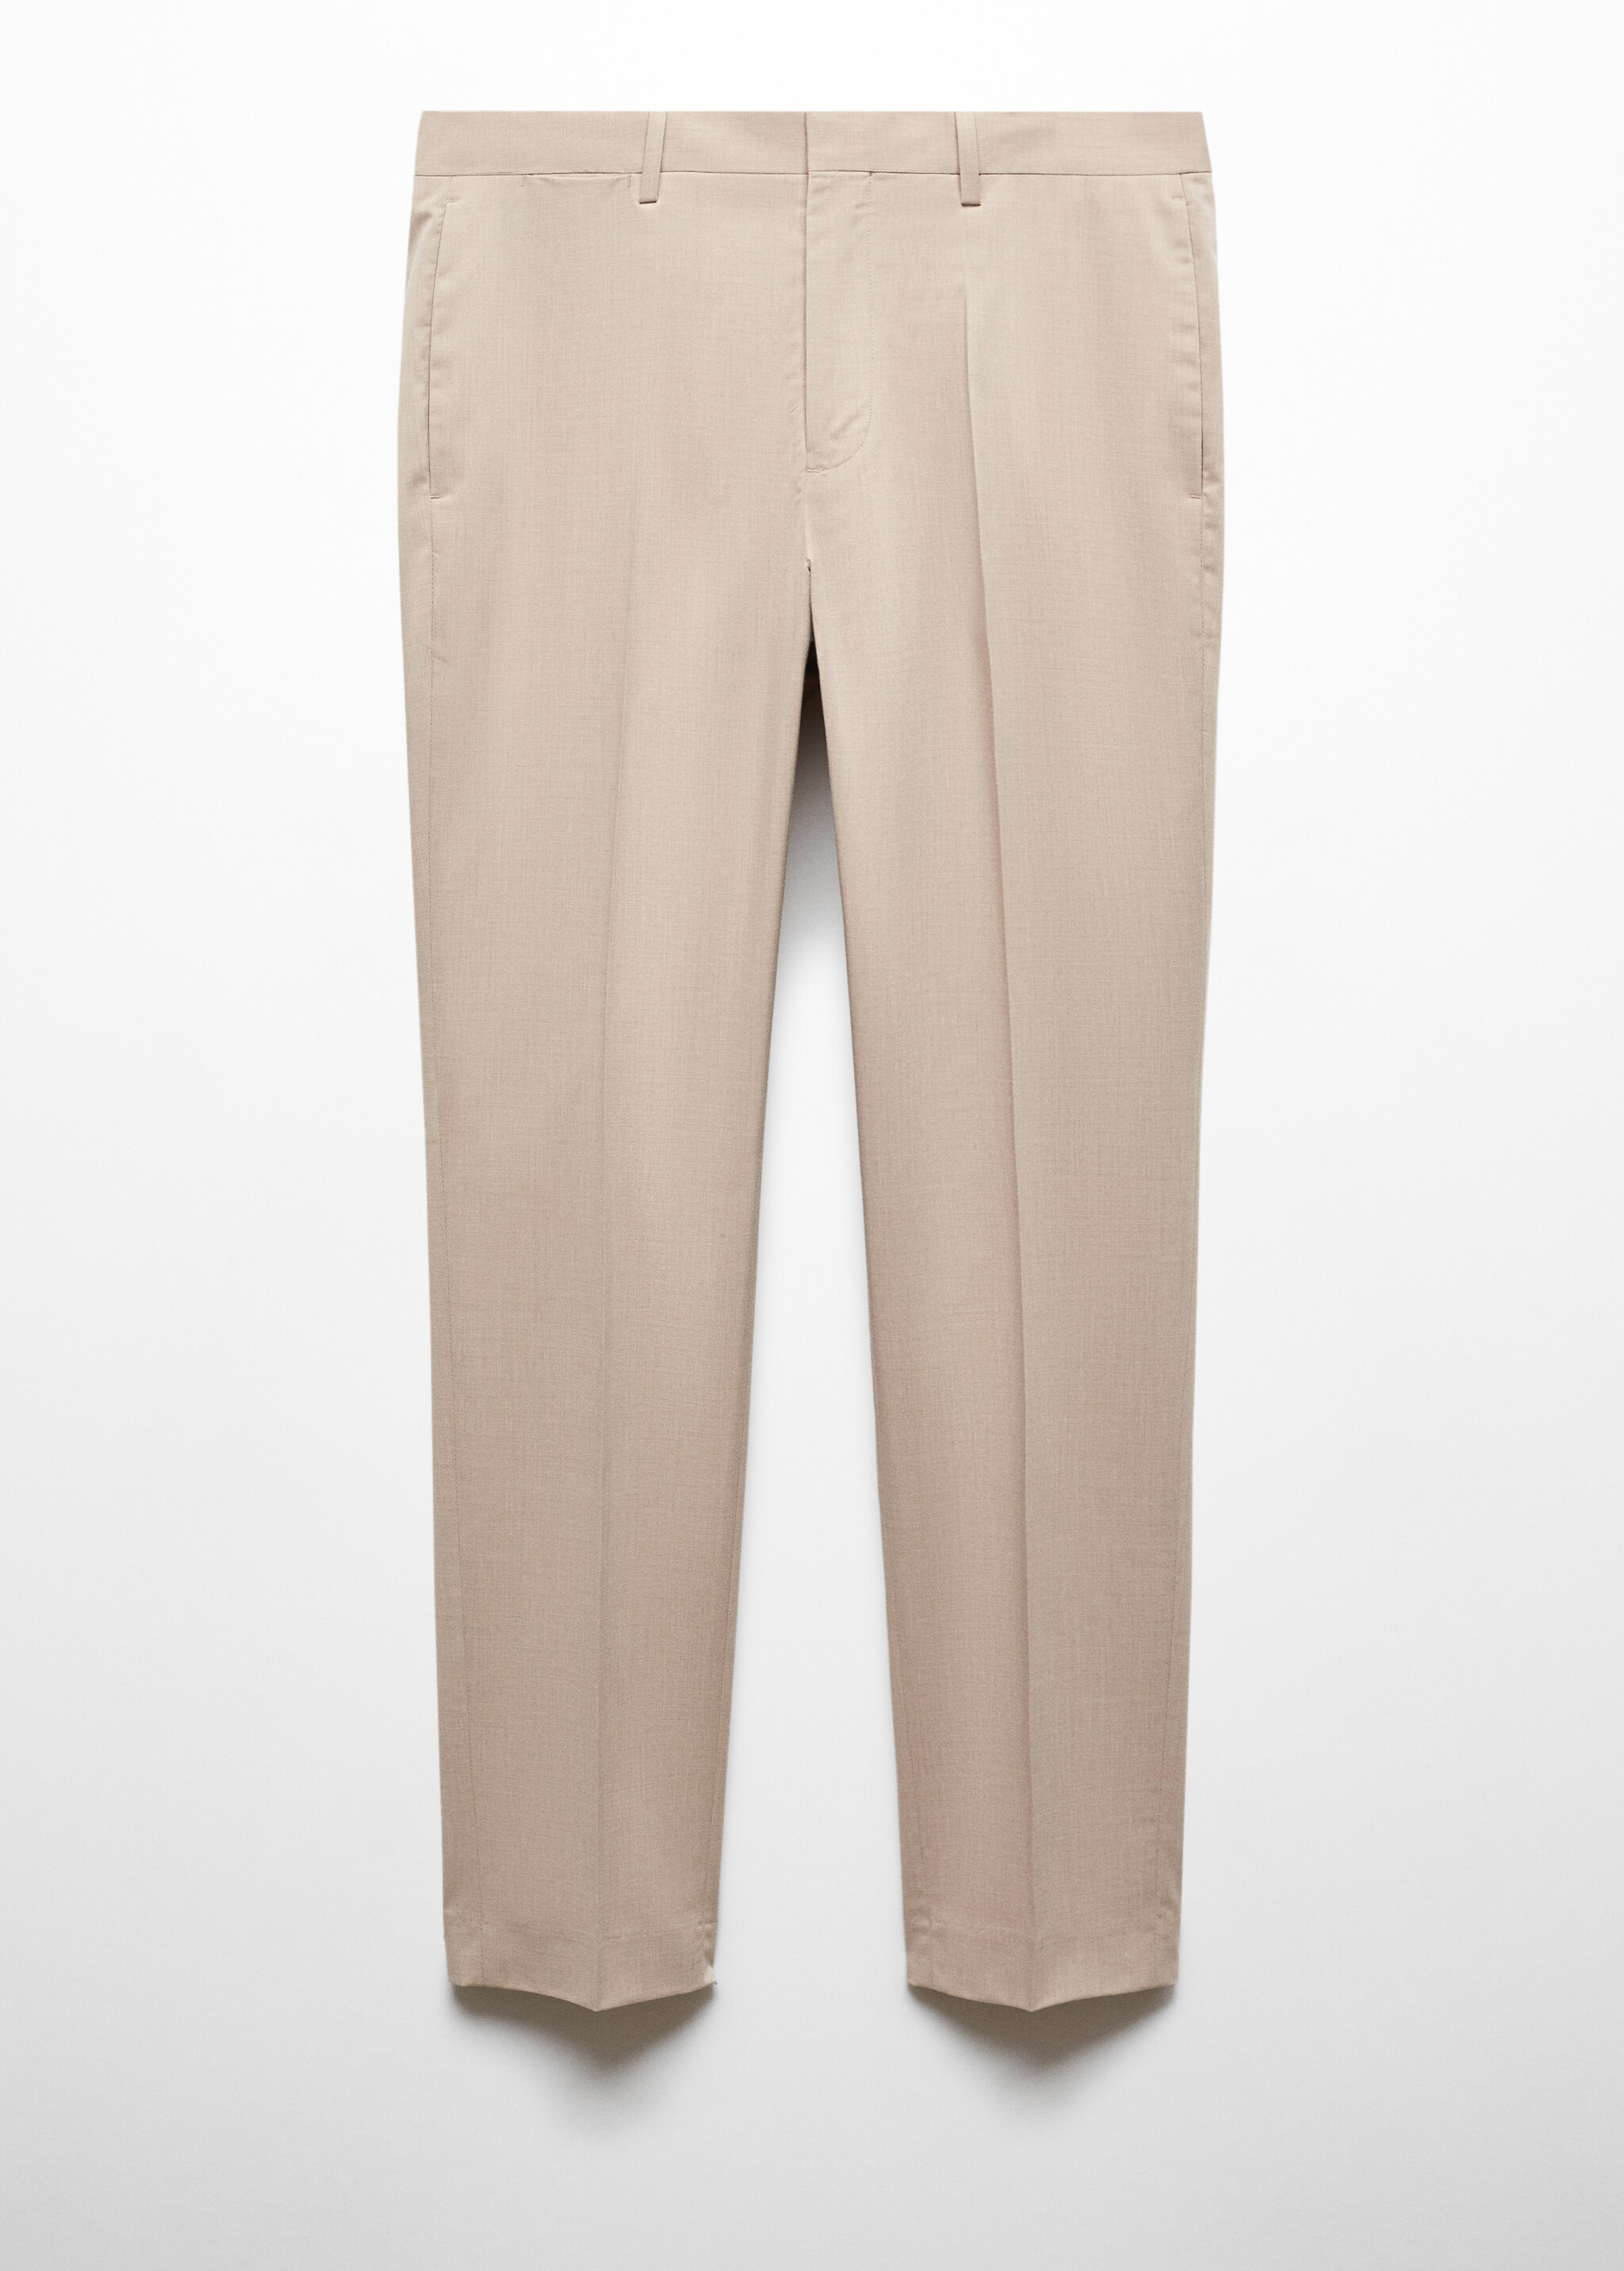 Pantaloni completo super slim-fit tessuto stretch - Articolo senza modello